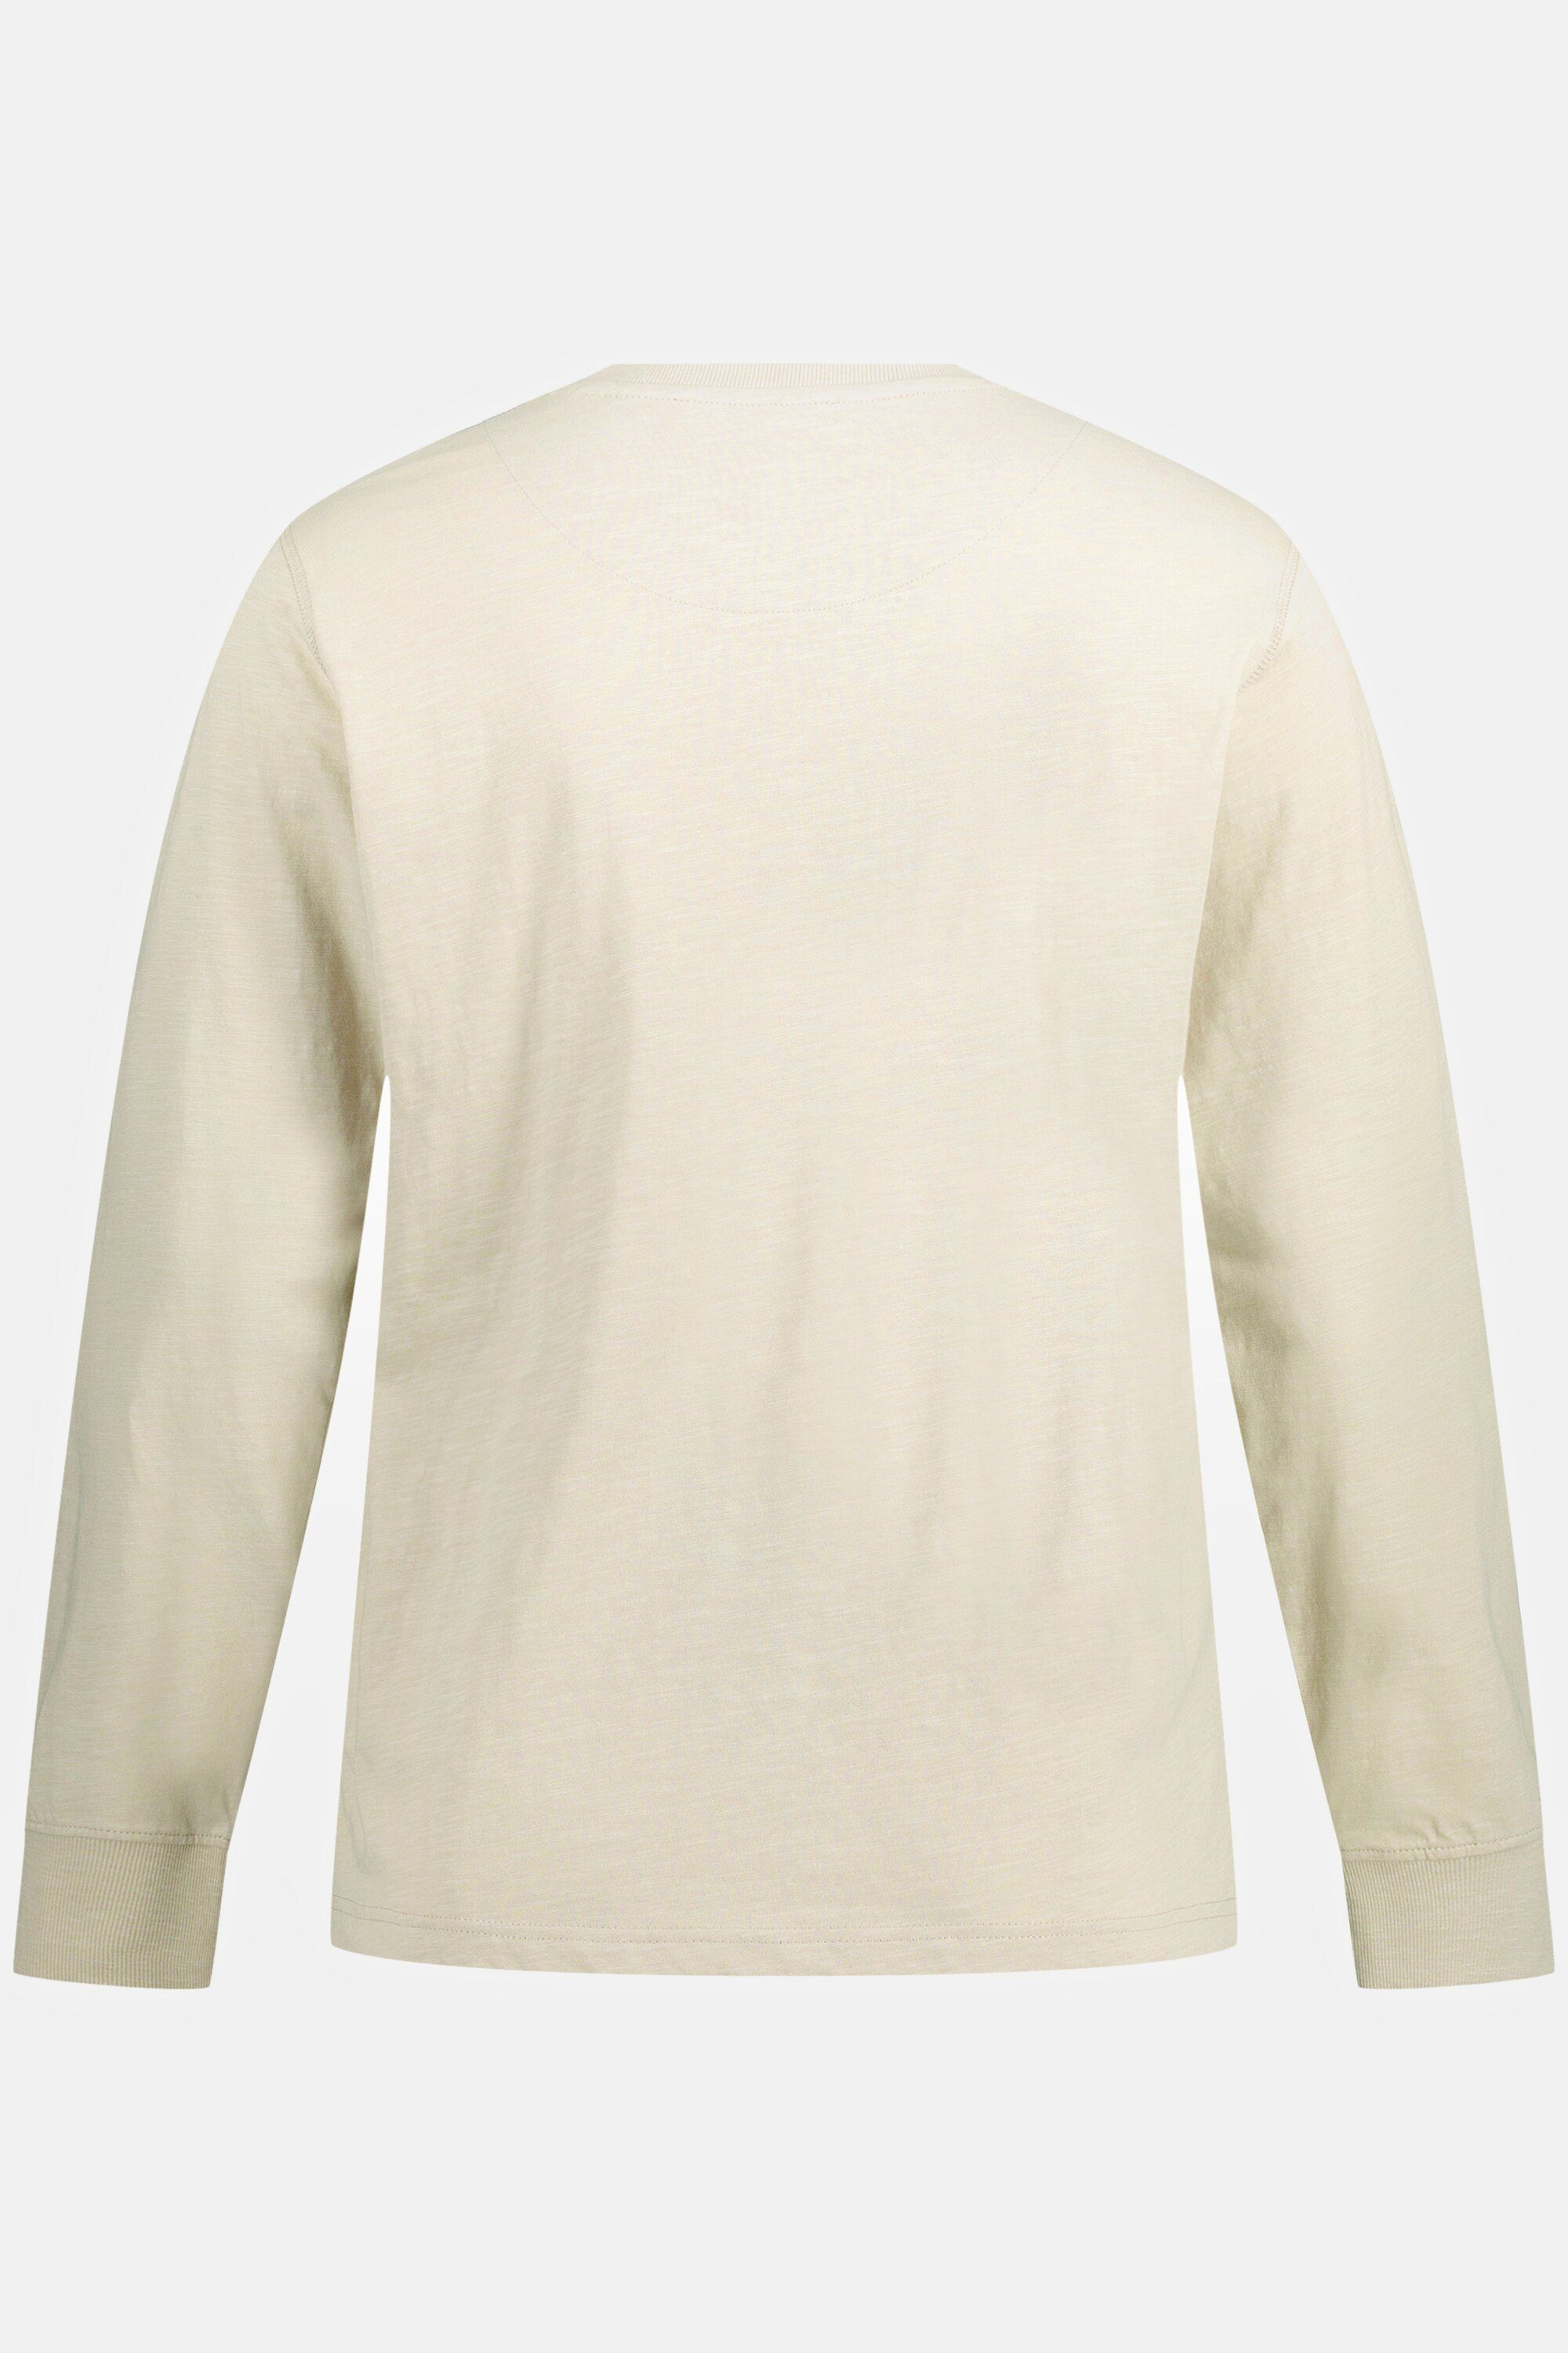 sand-beige Knopfleiste Rundhals Flammjersey JP1880 Henley Langarm T-Shirt